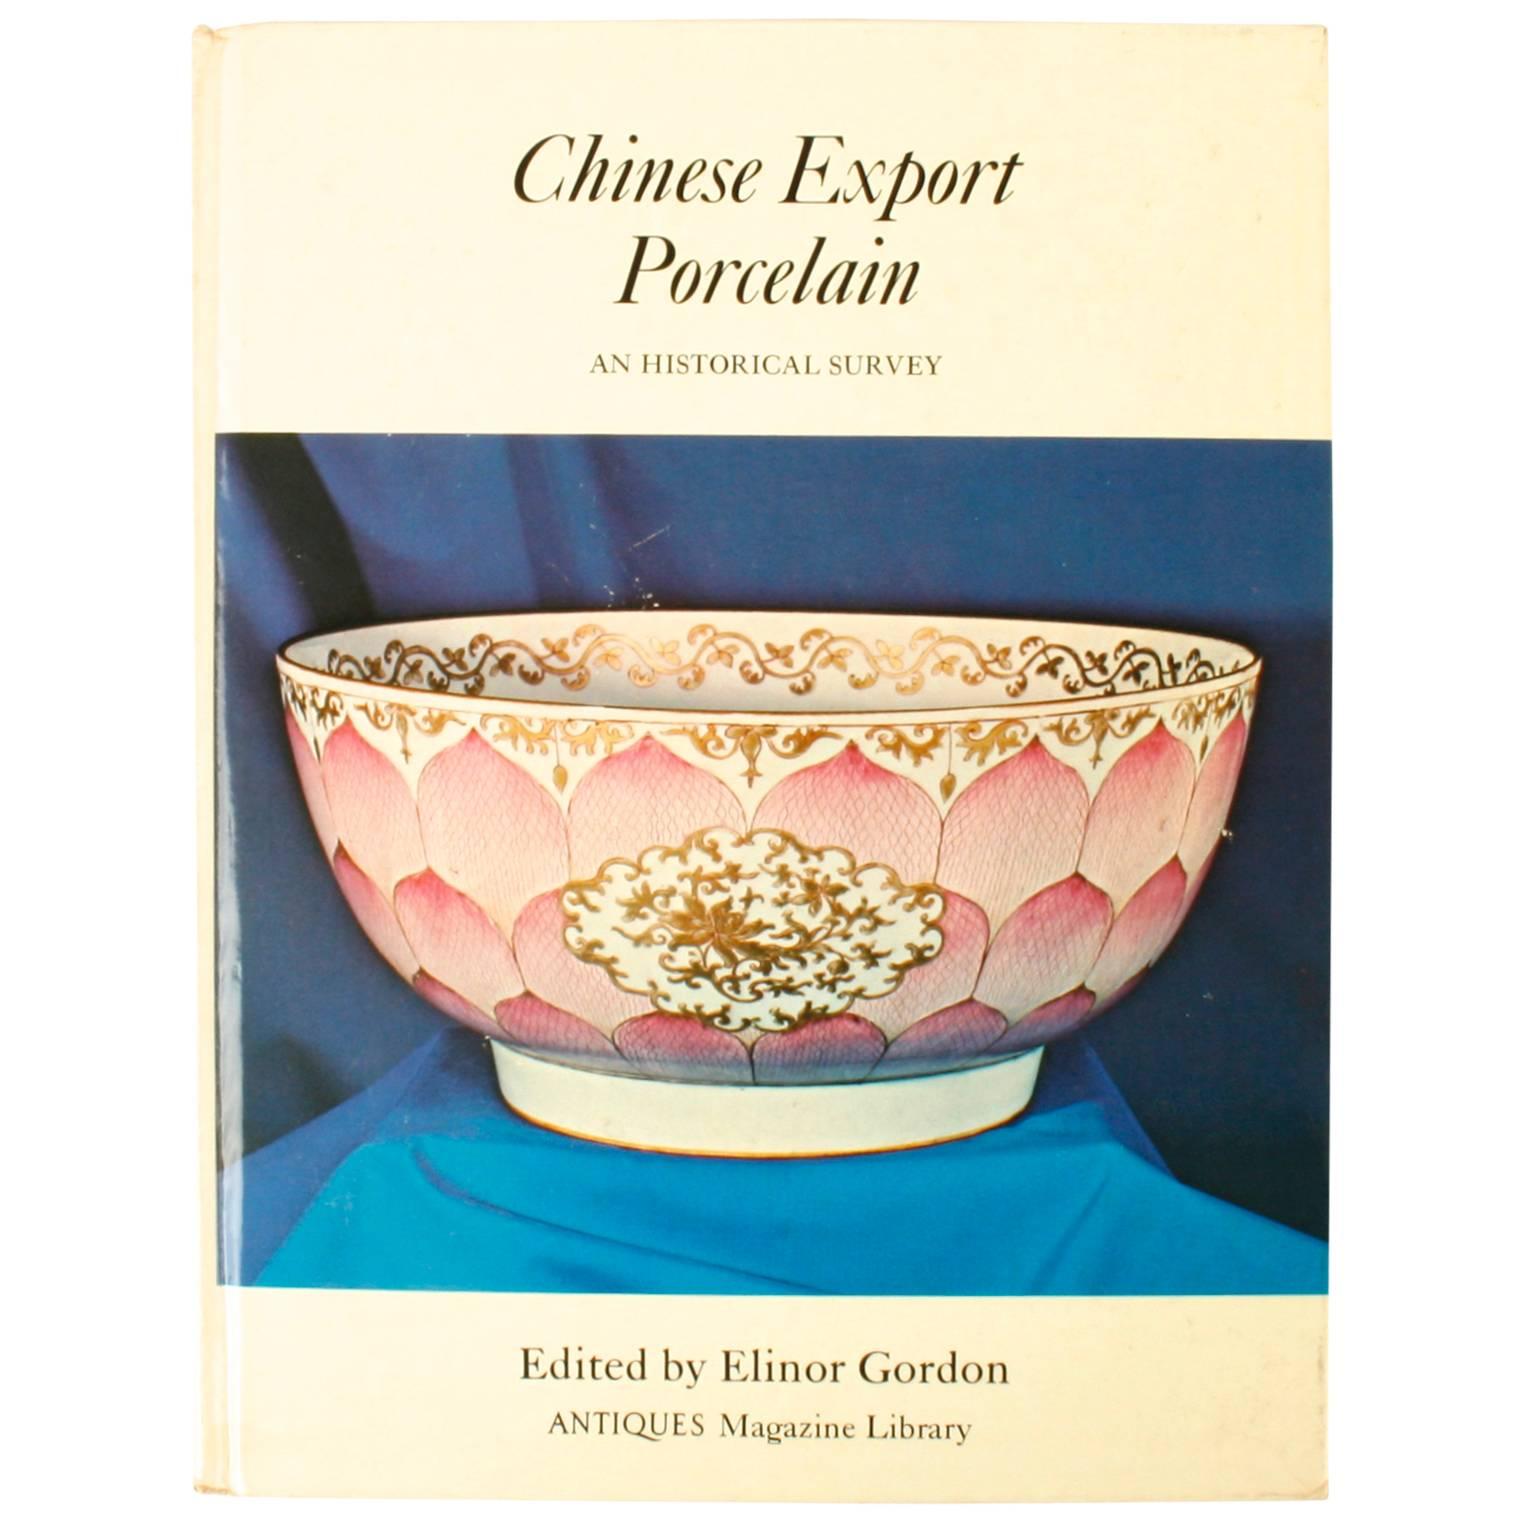 Chinesisches Exportporzellan des chinesischen Exports: Eine historische Studie von Elinor Gordon, Erstausgabe